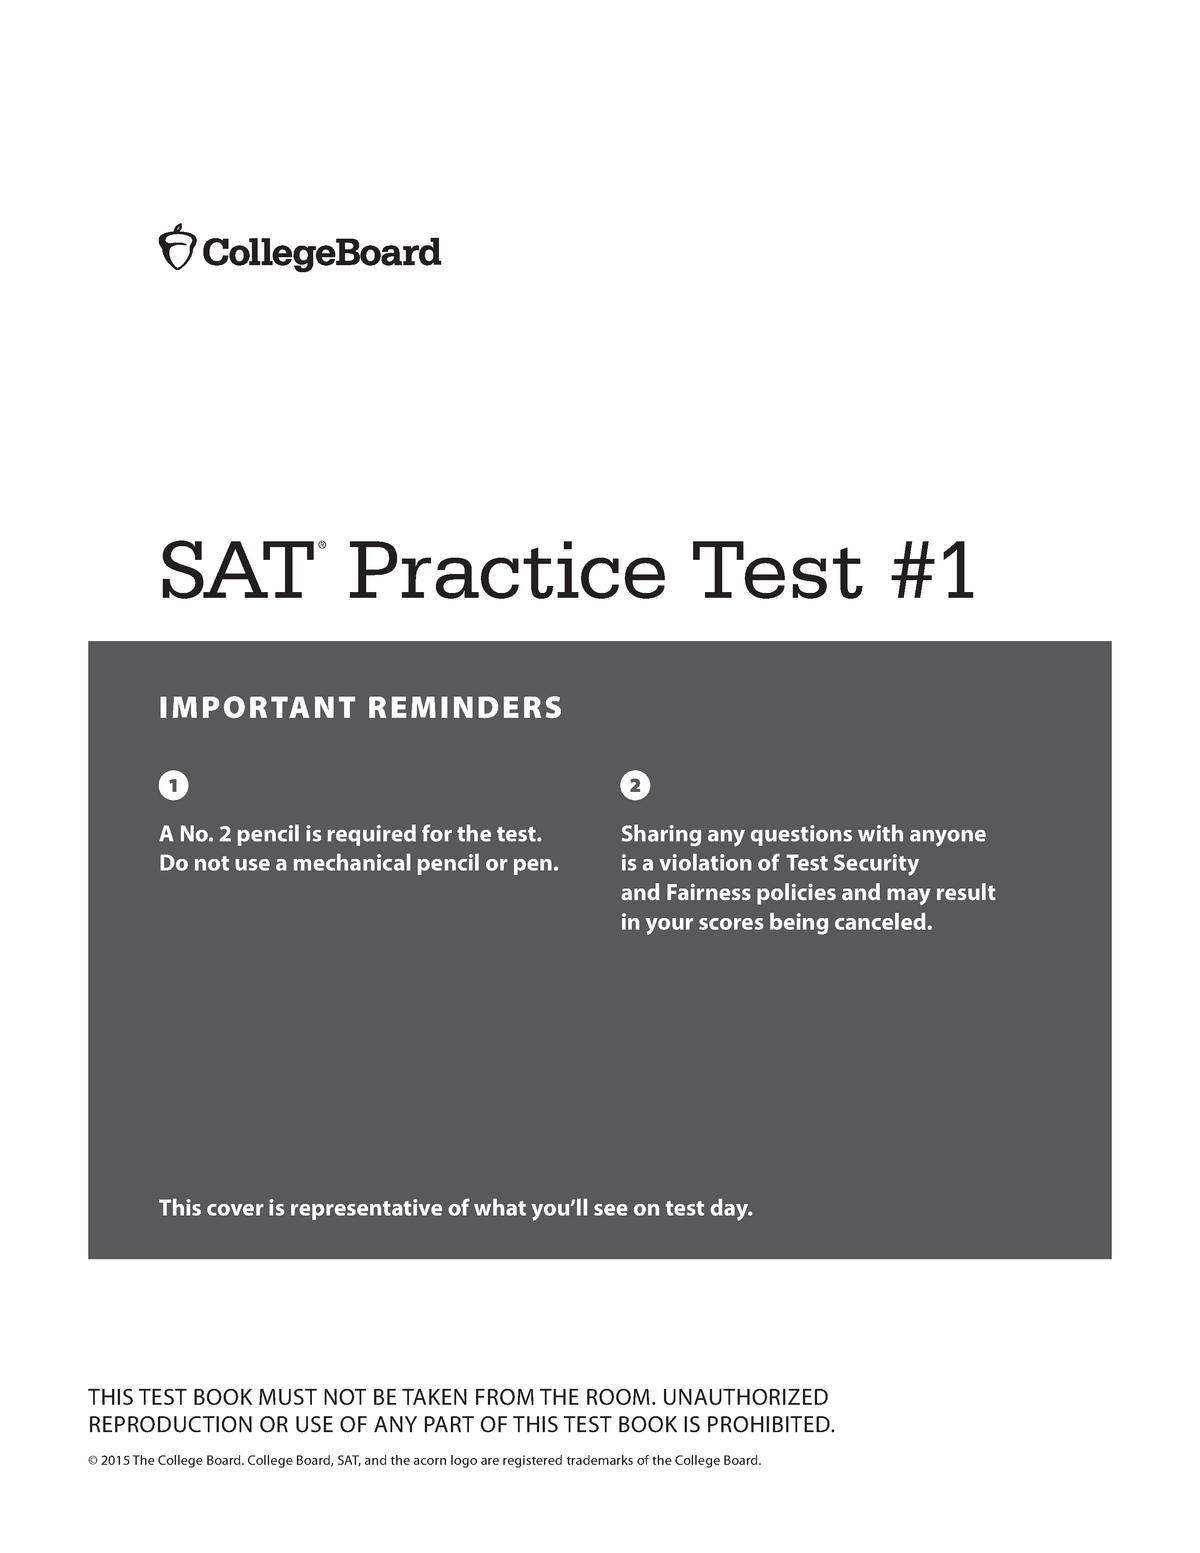 sat-practice-test-1-test-important-reminders-sat-practice-test-a-no-2-pencil-is